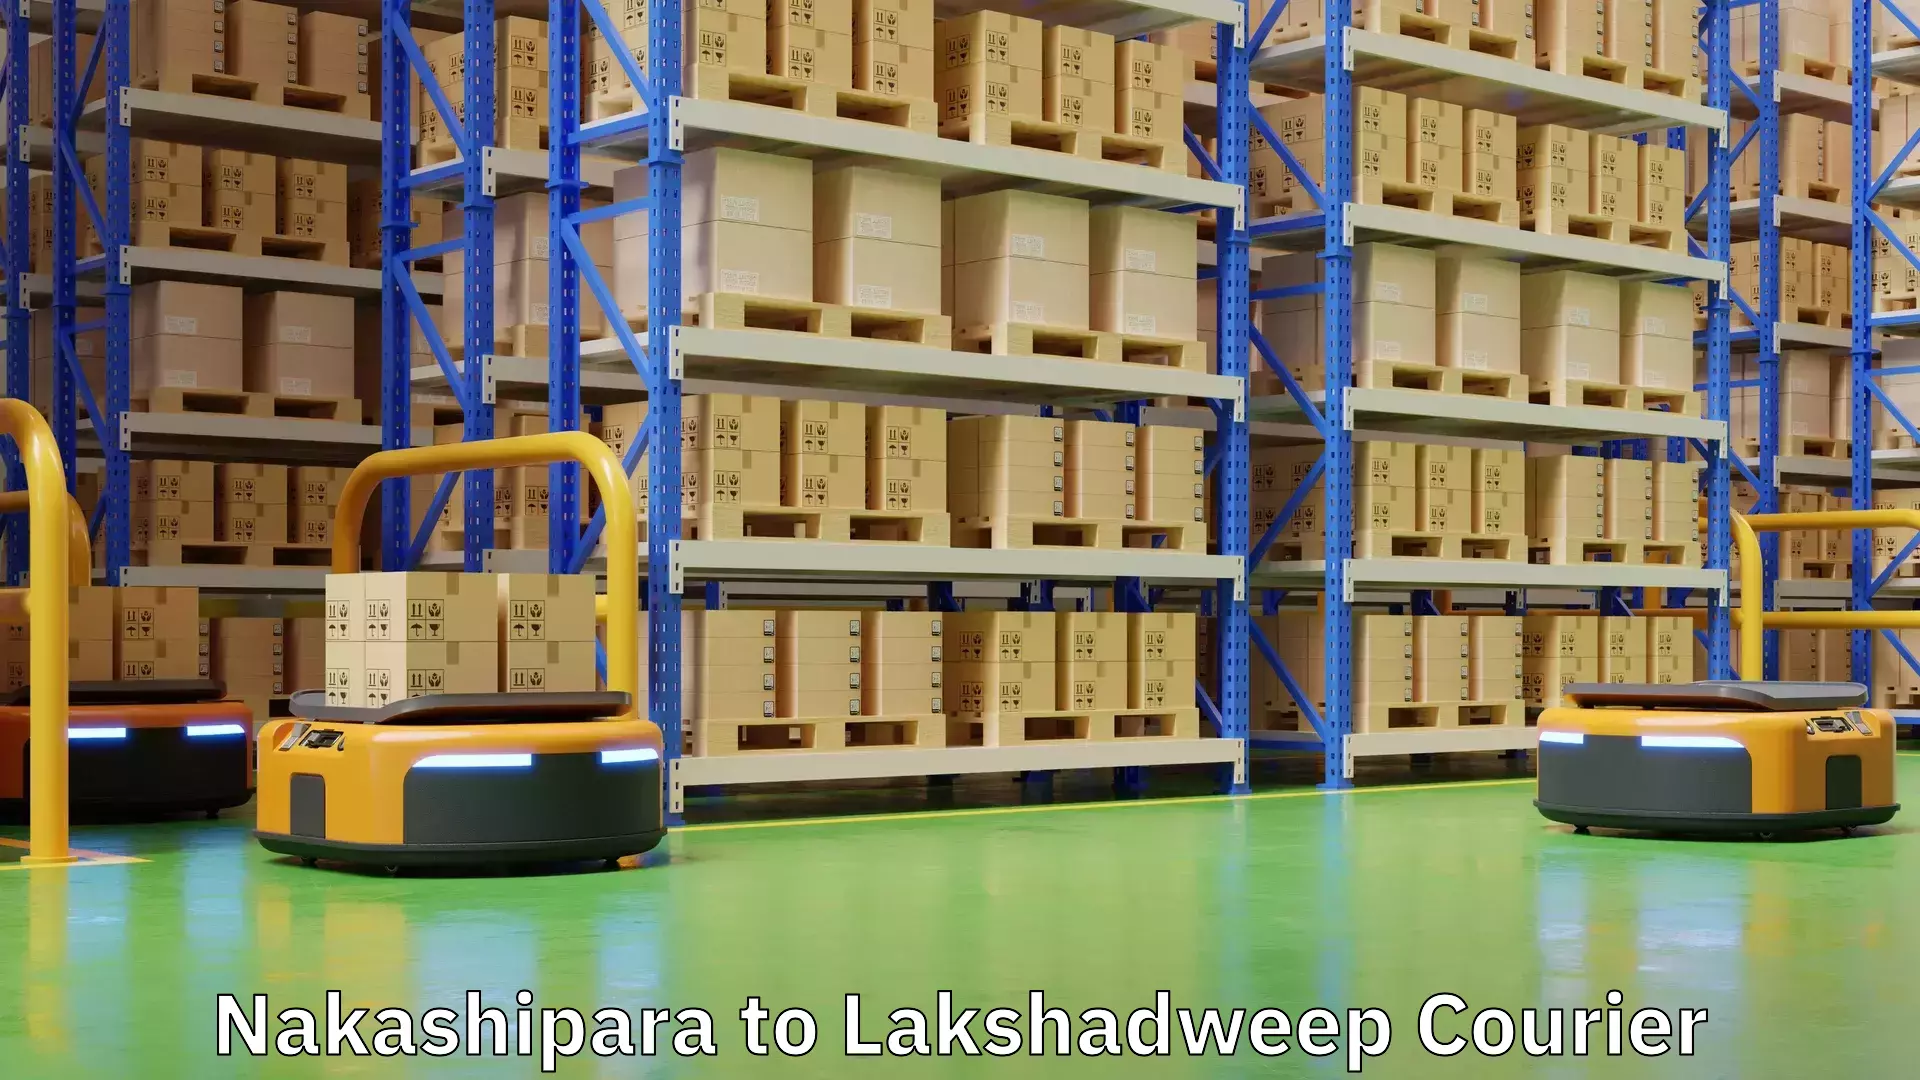 Flexible shipping options Nakashipara to Lakshadweep